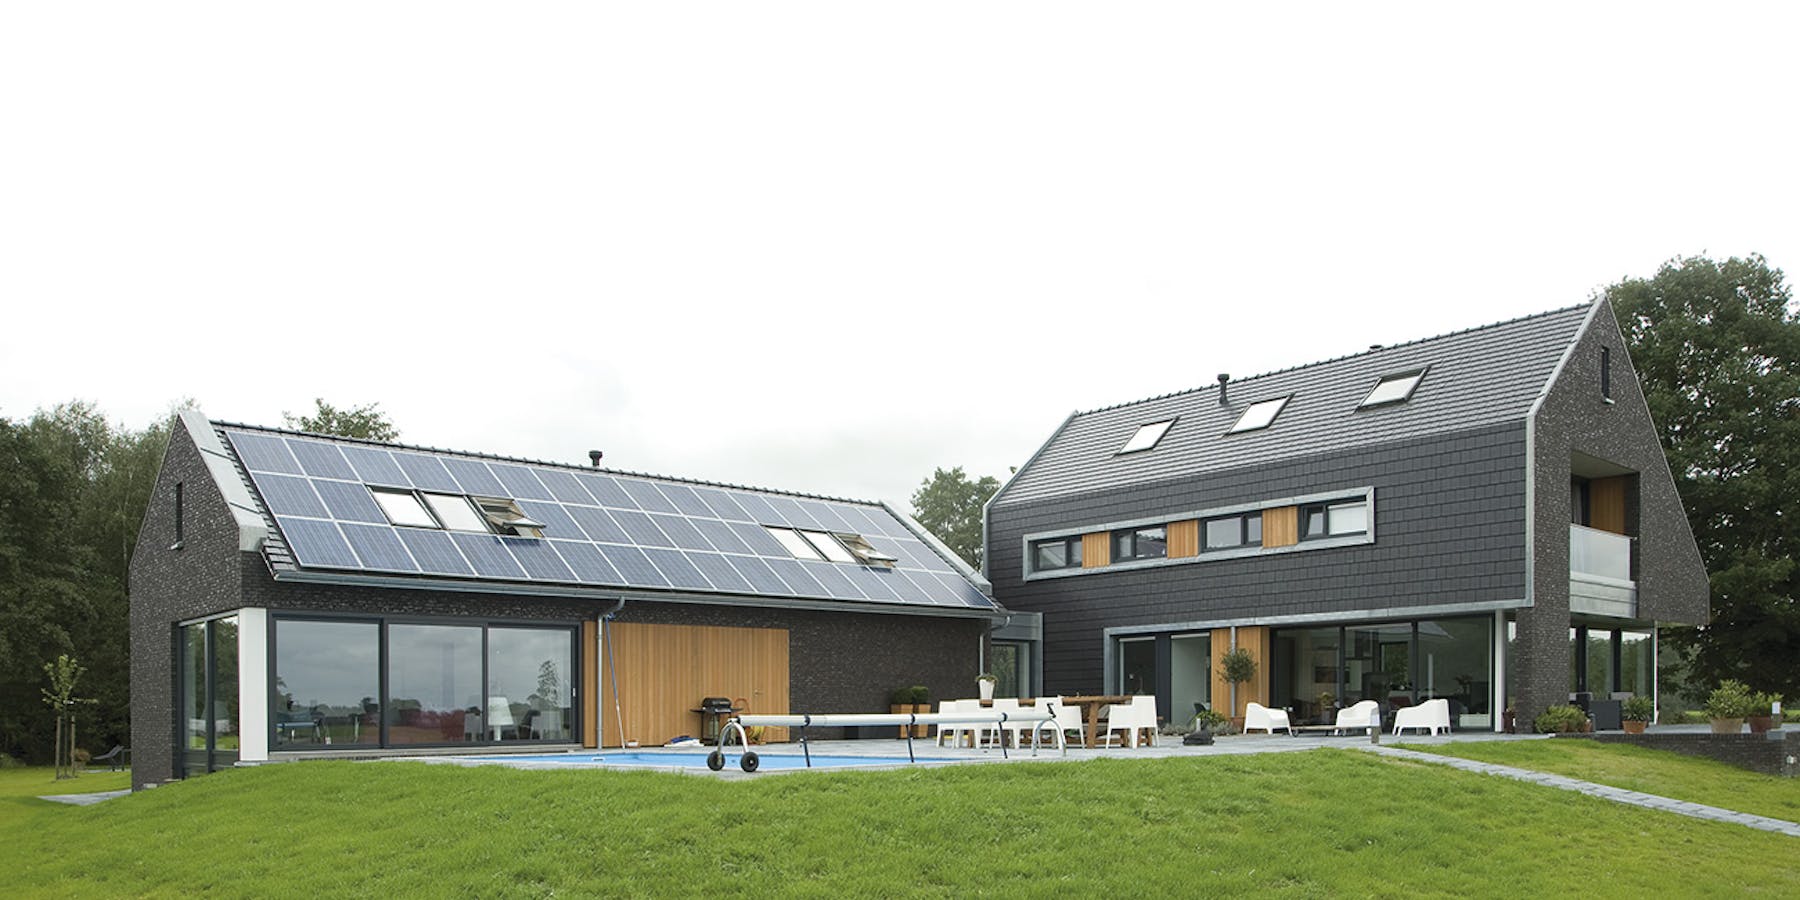 Photovoltaik und Dachfenster - Was muss beachtet werden? 